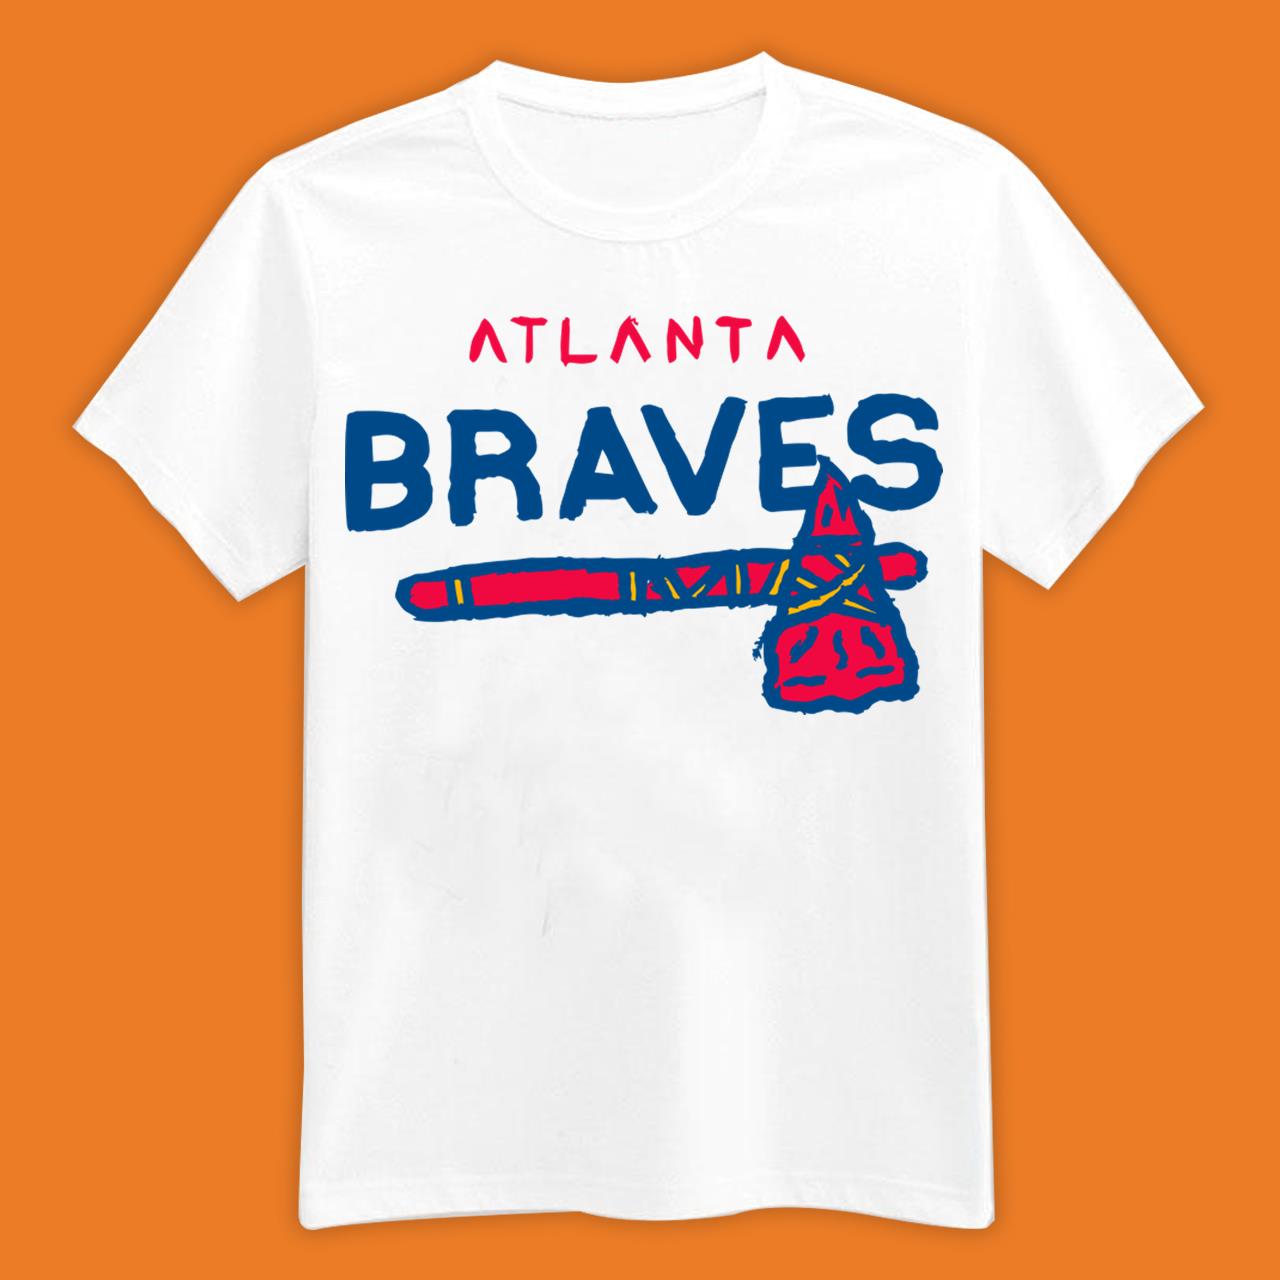 Team Atlanta Braves Baseball T-Shirt